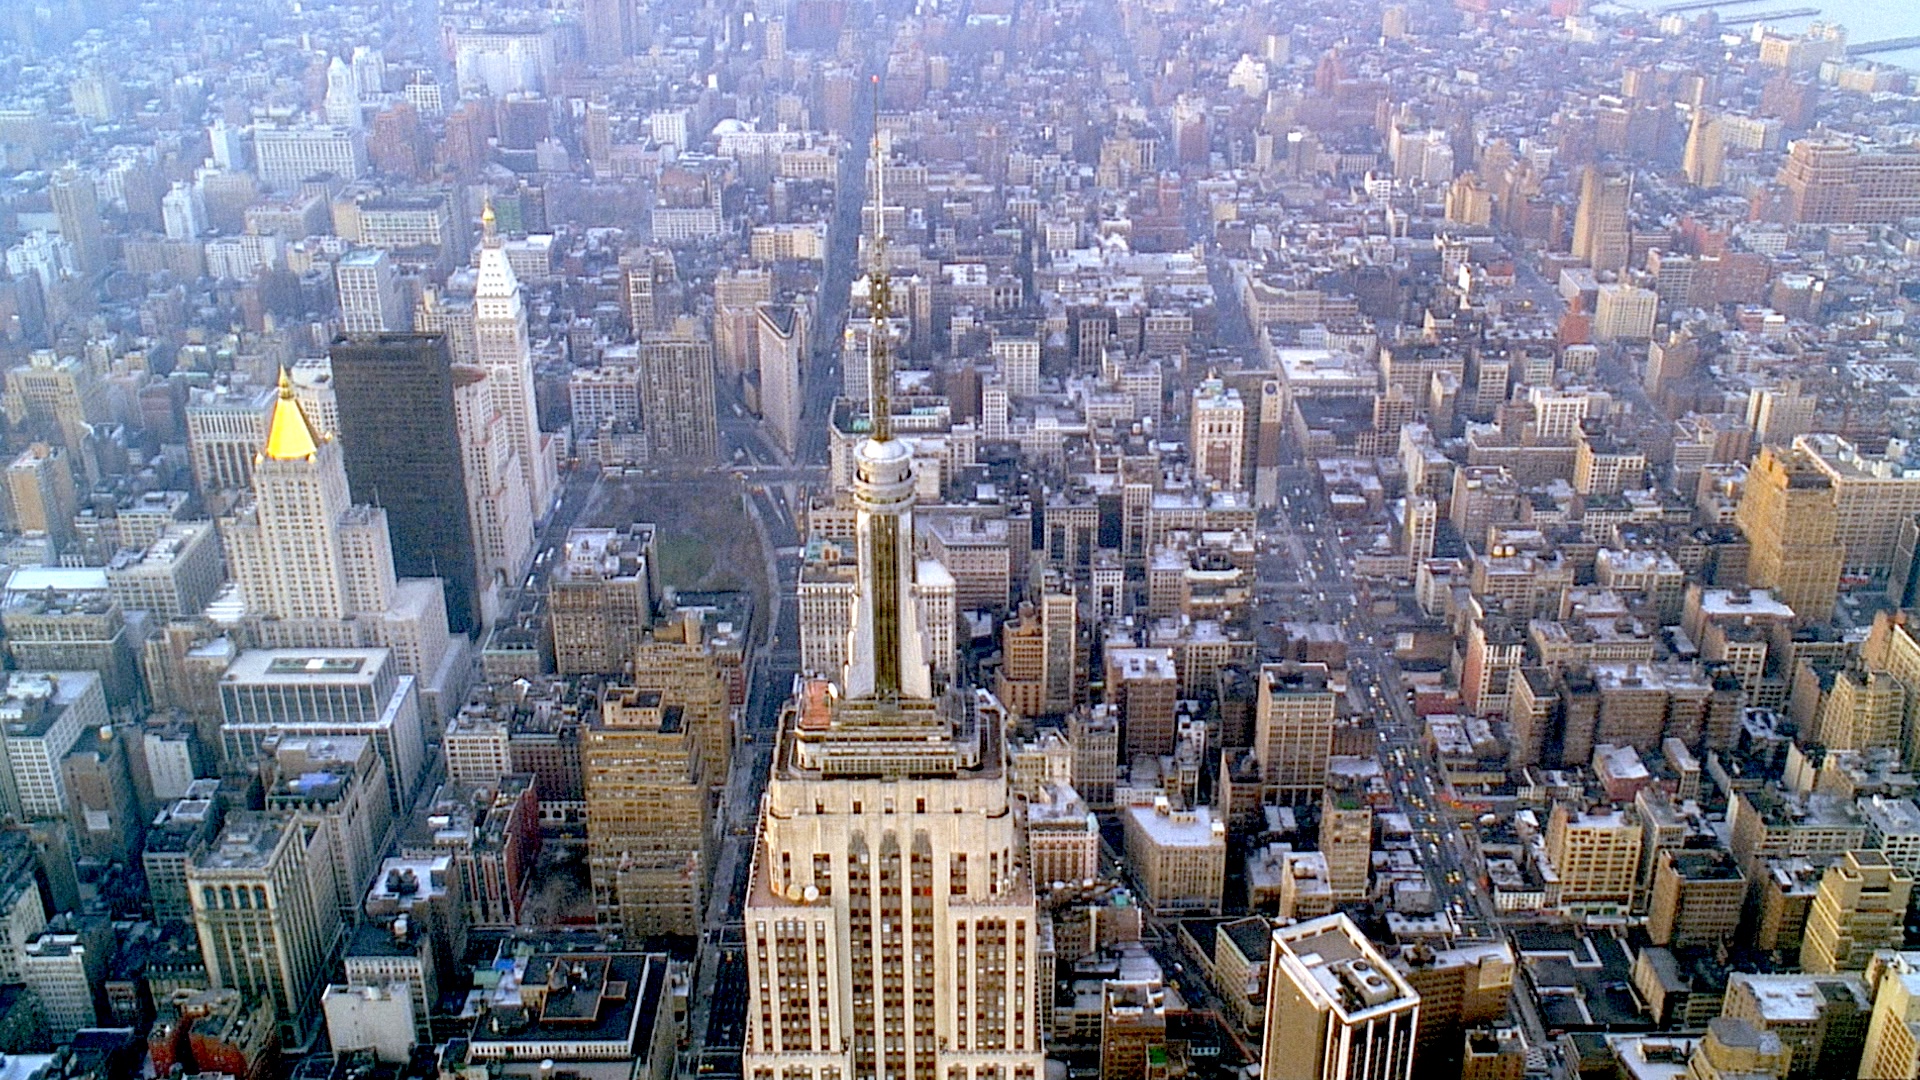 都市 のことを考えると 自分の望むものが見えてくる 60年代ニューヨークで闘った都市活動家に学ぶ 闘争 の意味 ジェイン ジェイコブズ ニューヨーク都市計画革命 Greenz Jp グリーンズ